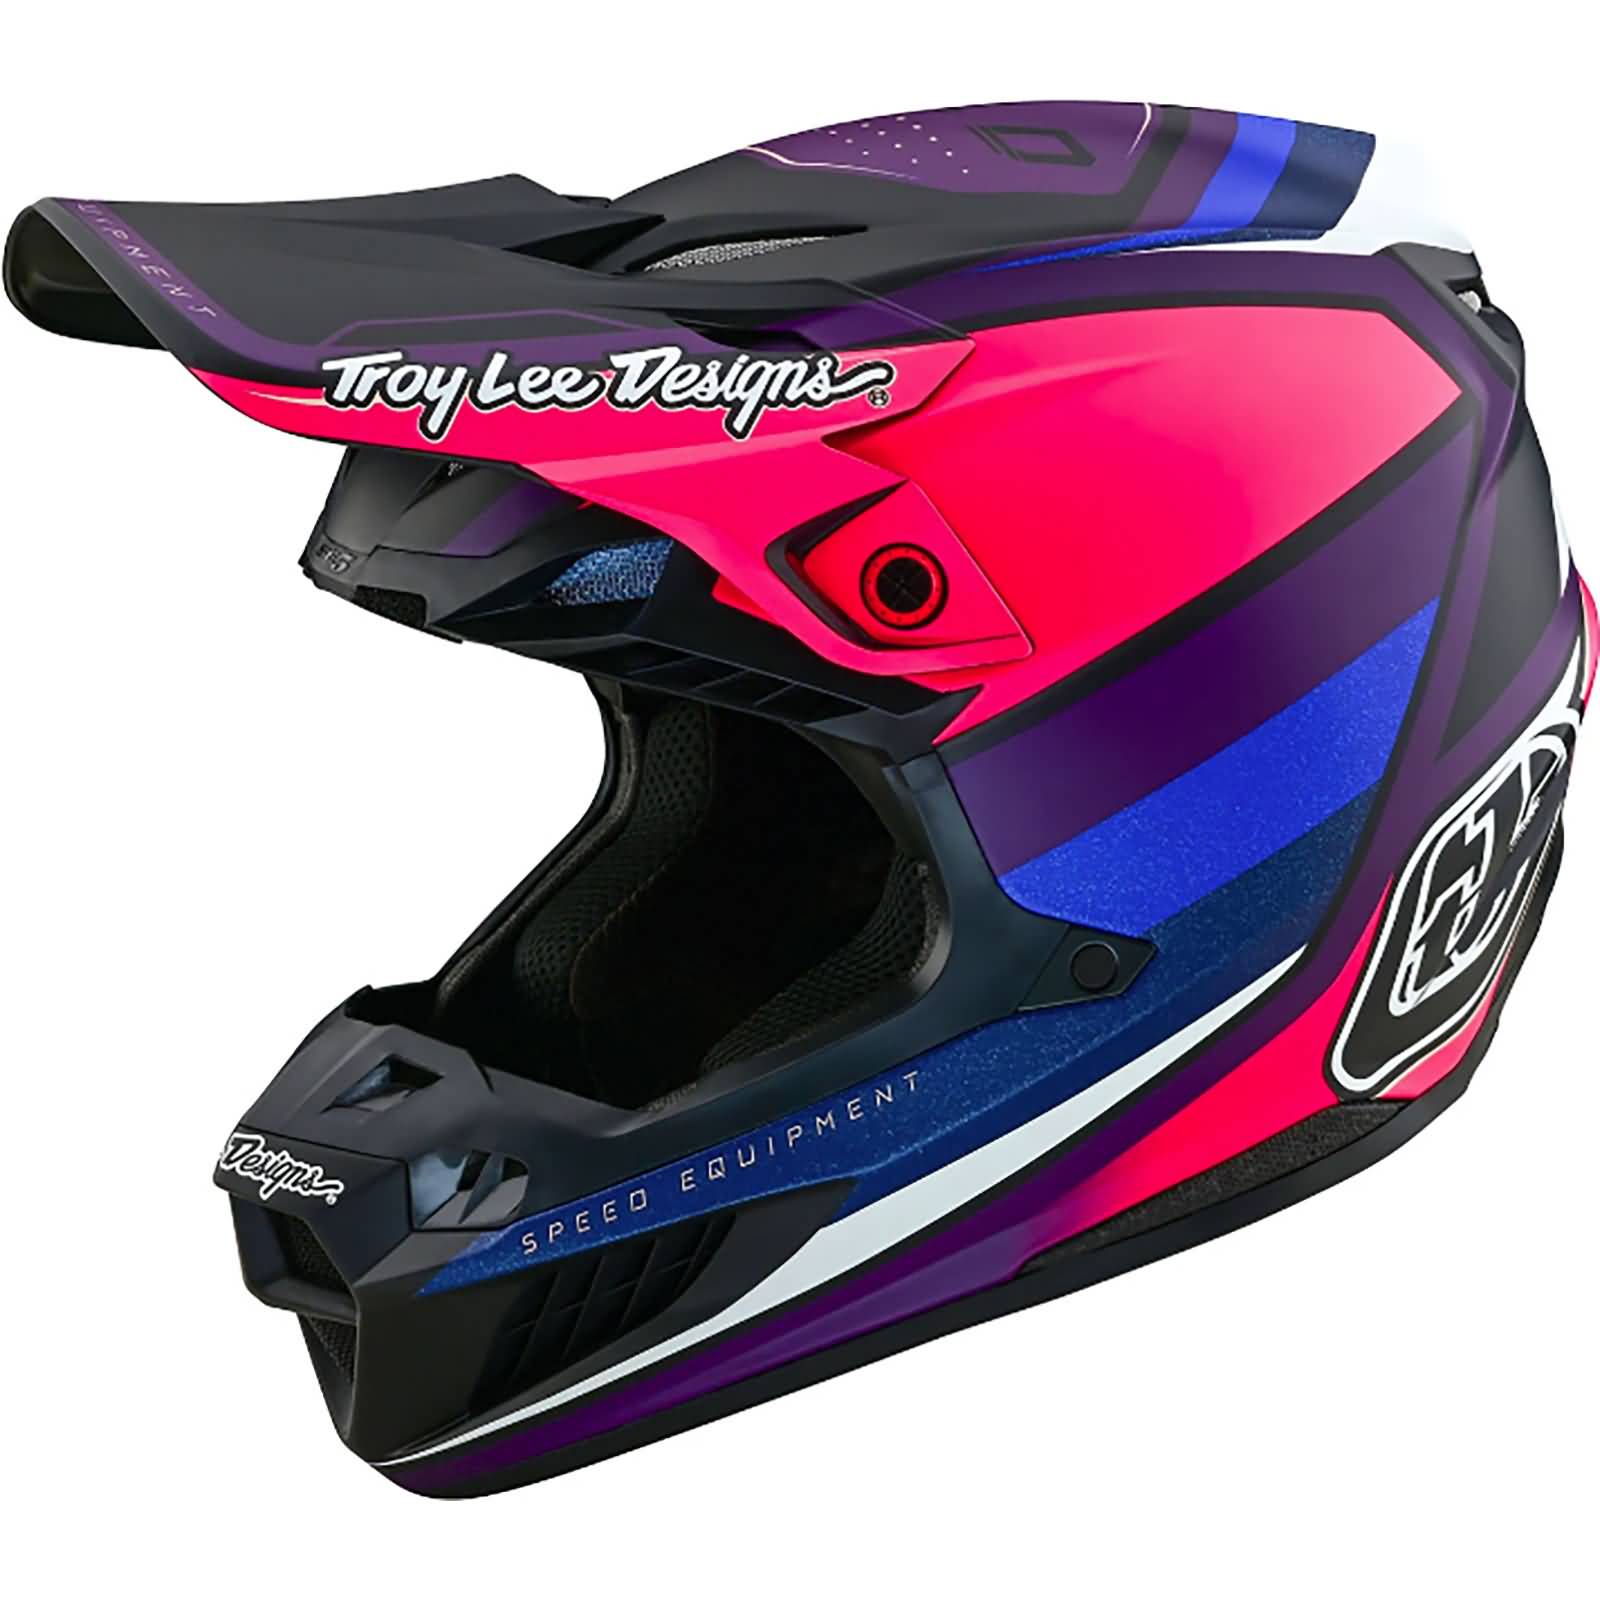 Troy Lee Designs SE5 Composite Reverb MIPS Adult Off-Road Helmets-182001011